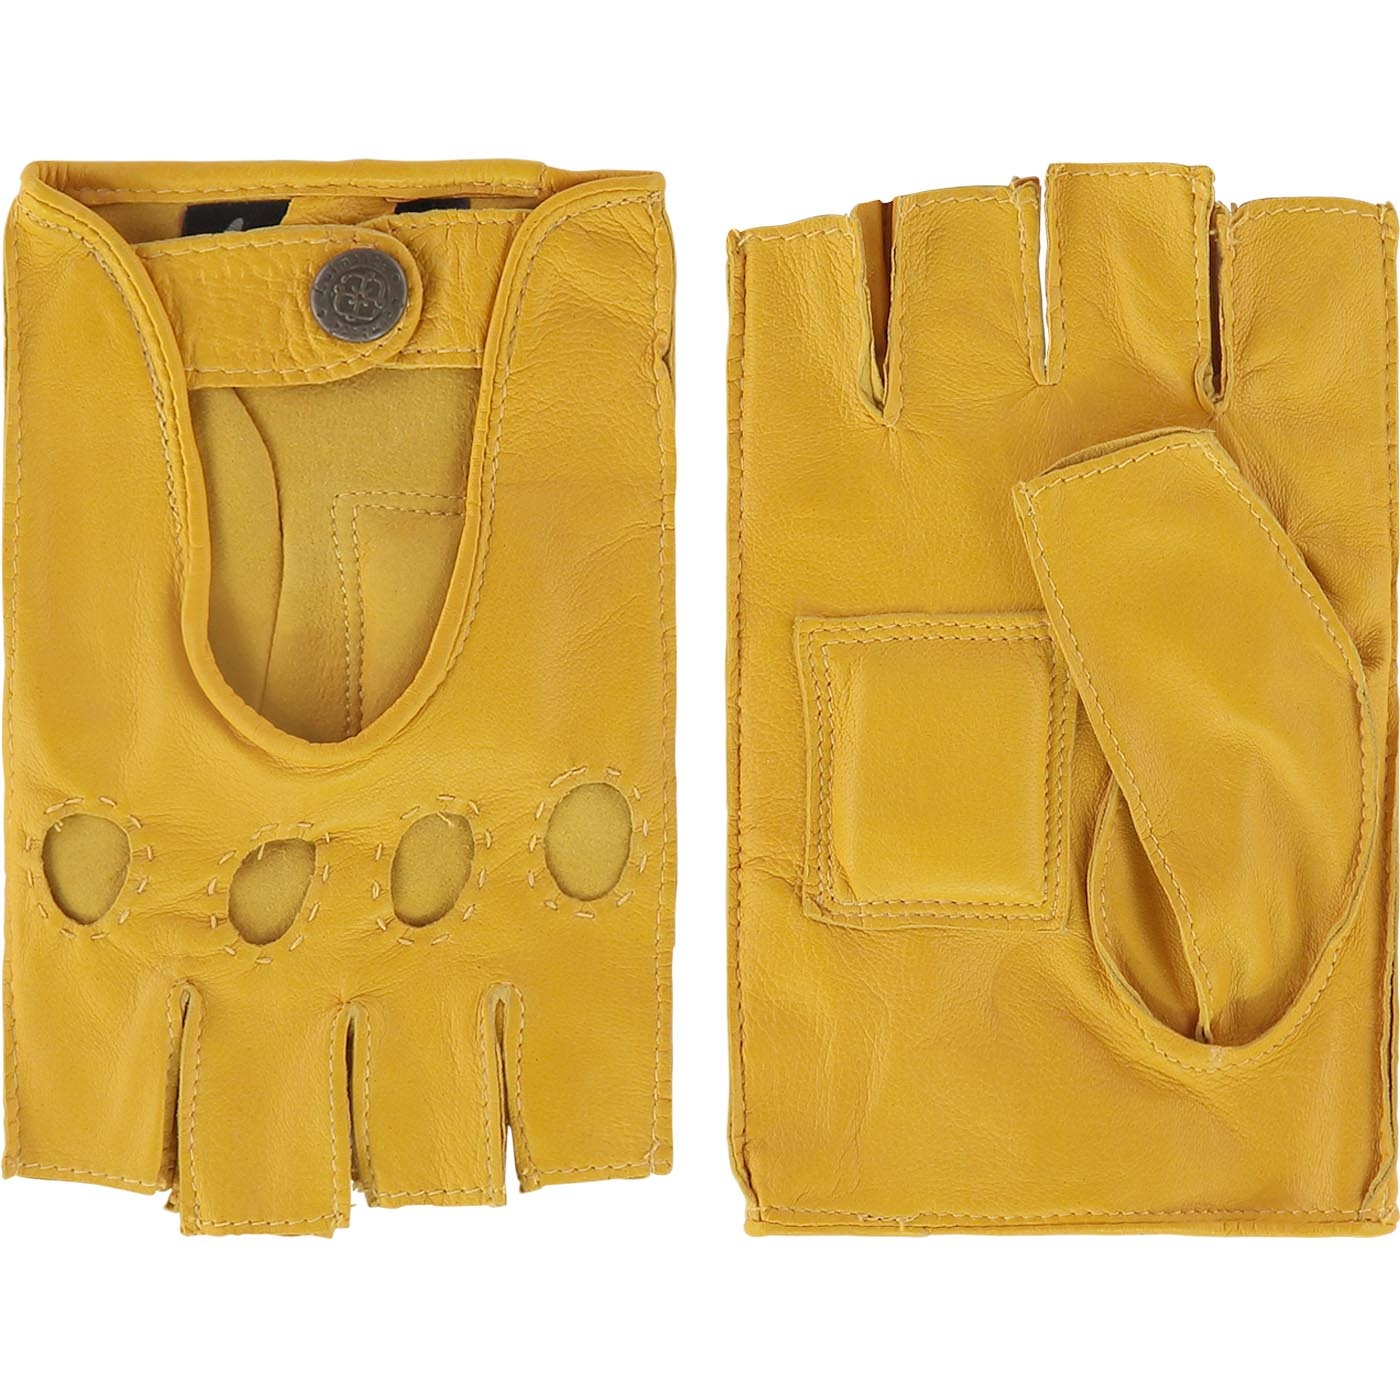 Leather unlined men's driving gloves model Sydney - Laimböck